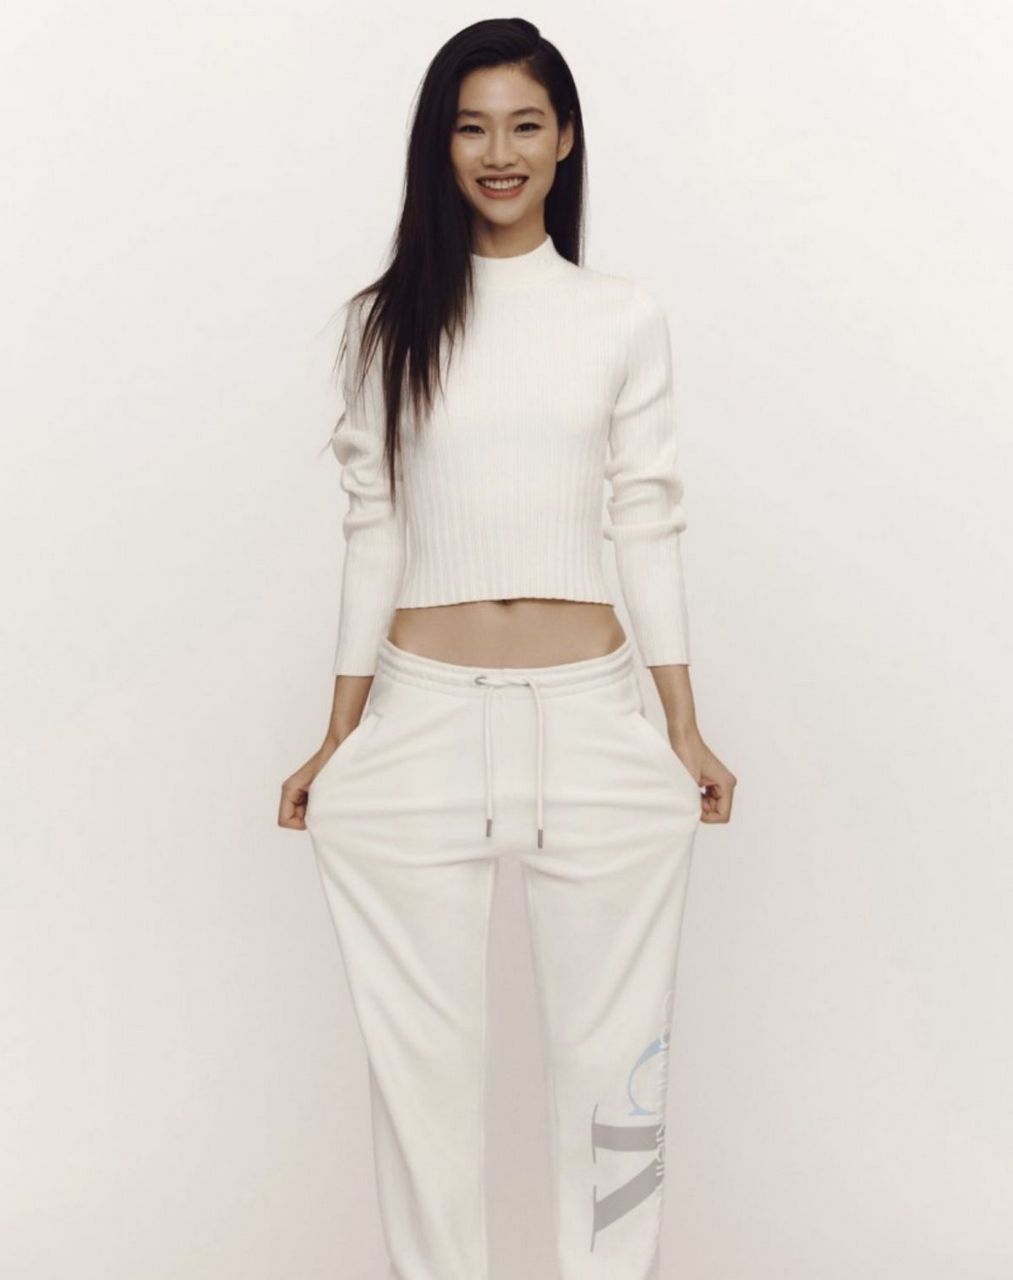 Hoyeon Jung For Calvin Klein